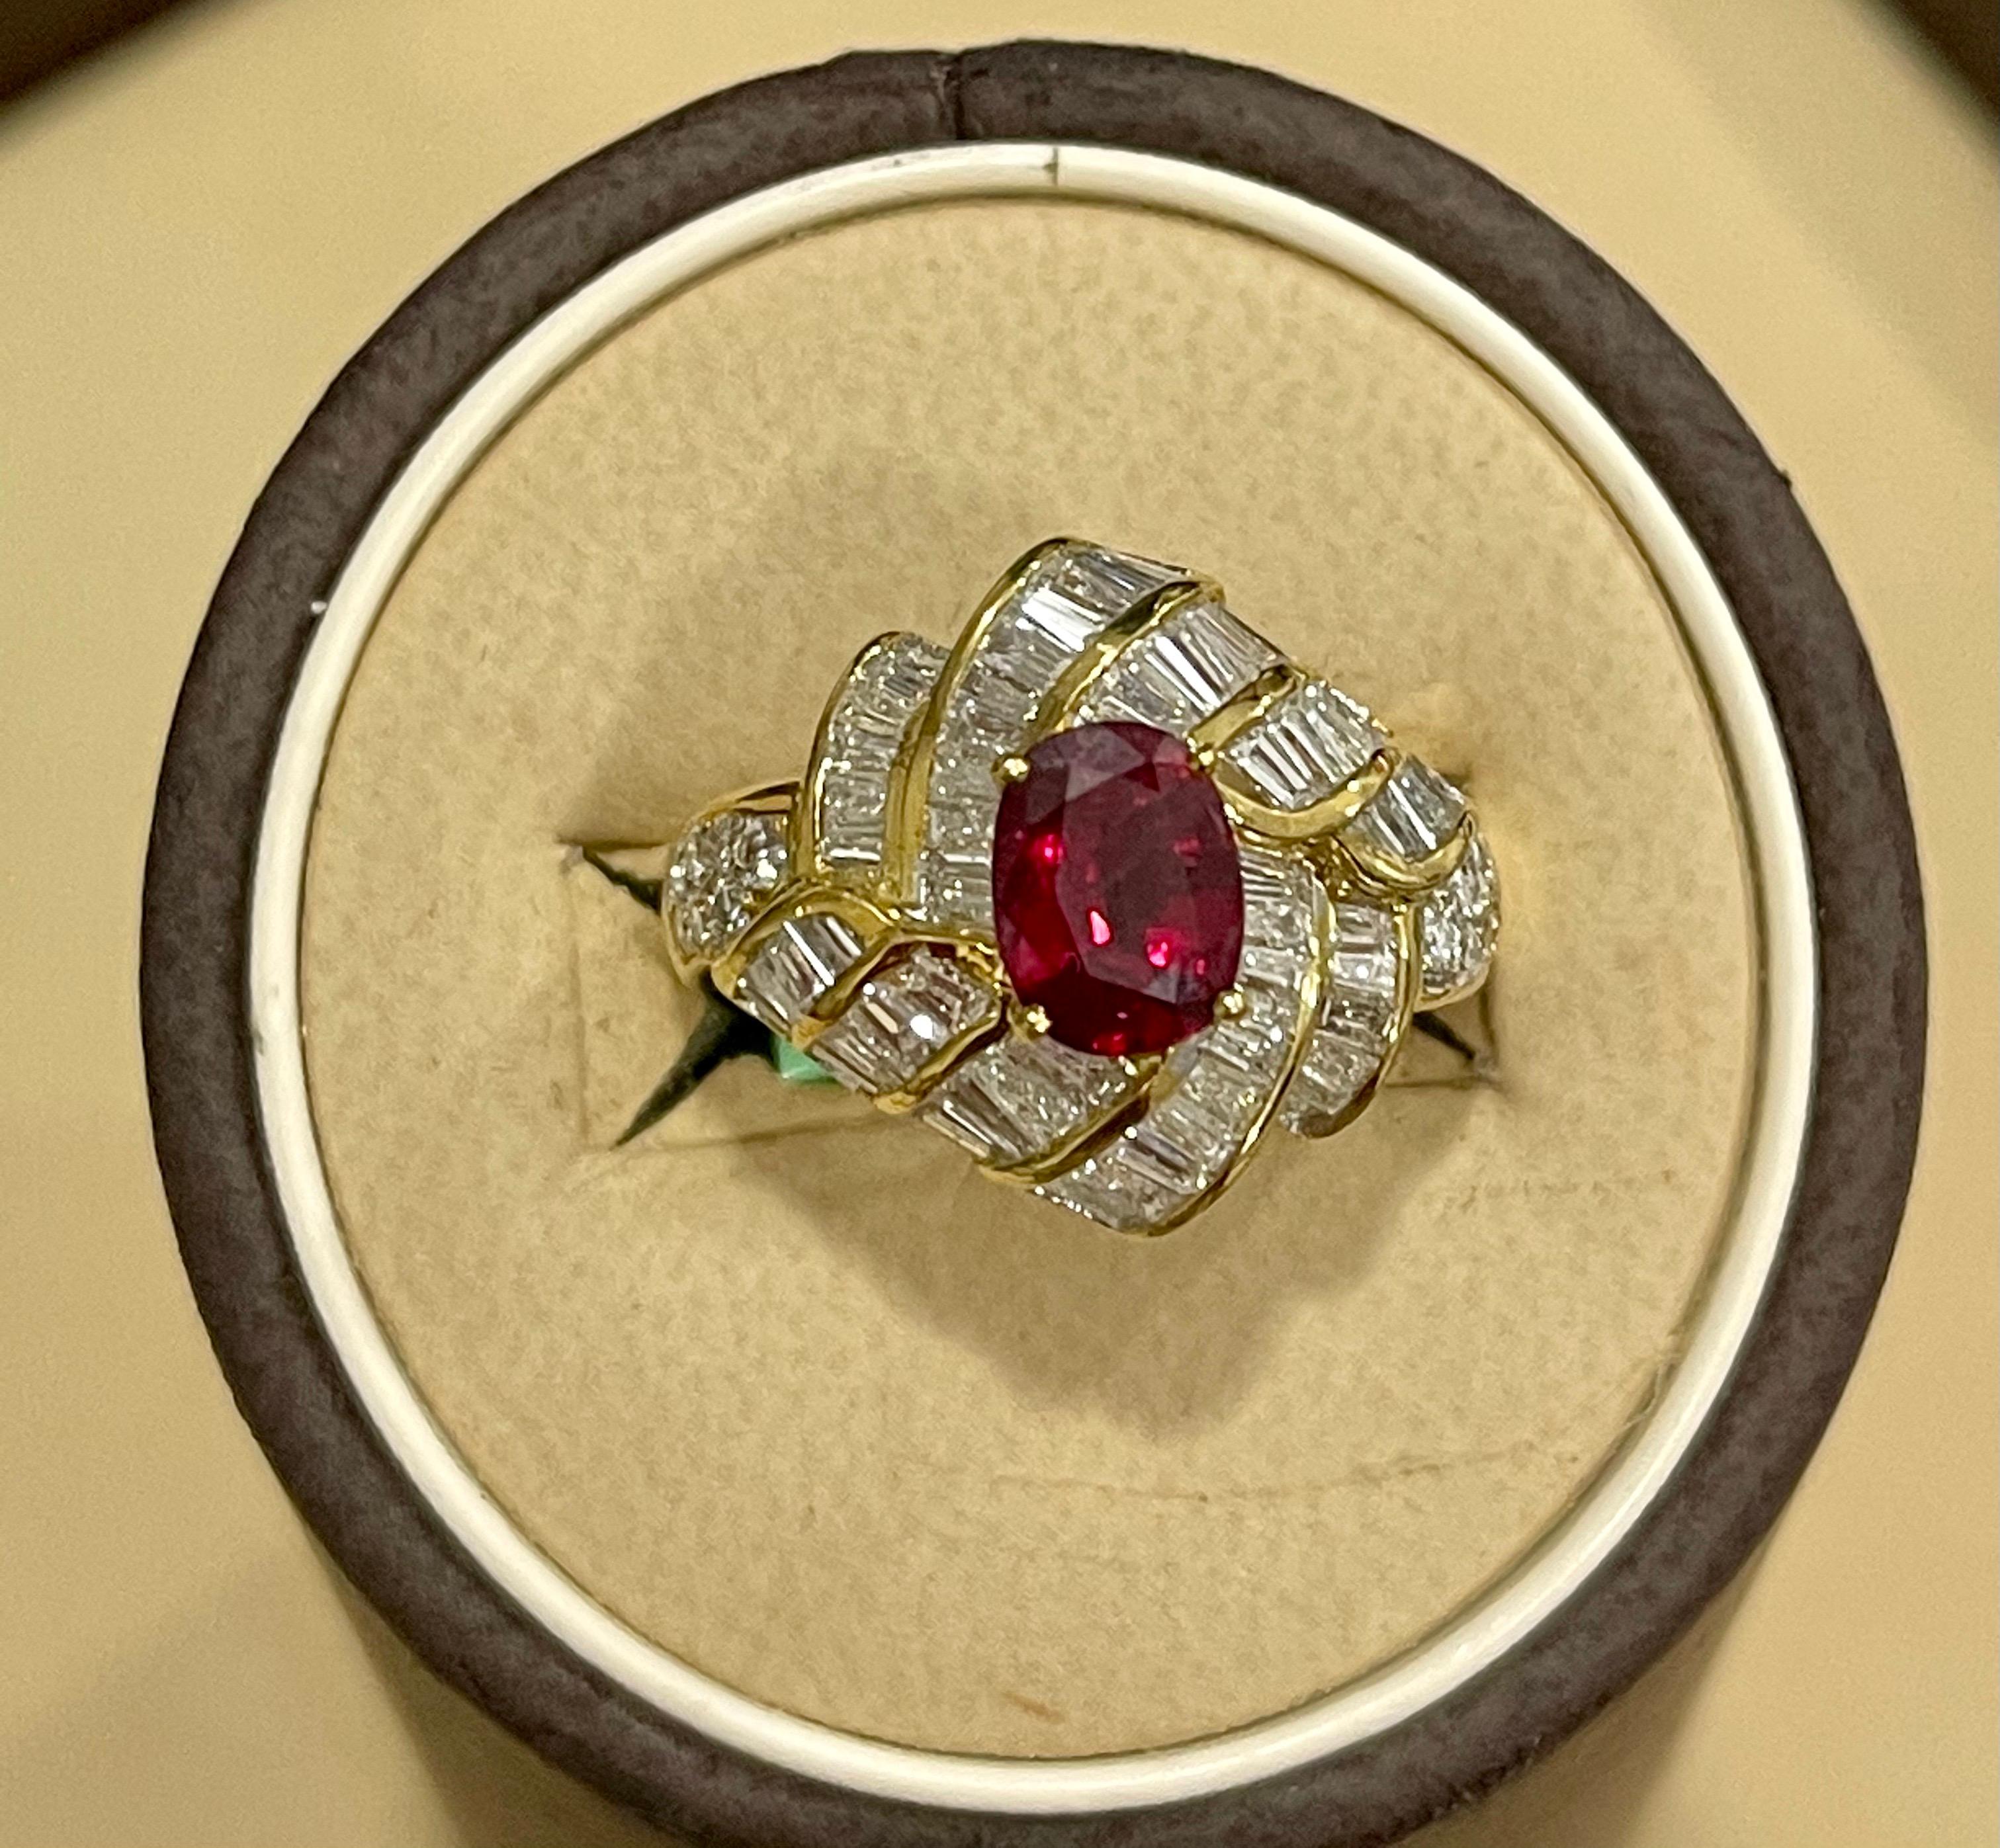 1.3 Carat Natural Oval Burma Ruby and 1.3 Carat Diamond 18 Karat Gold Ring 3